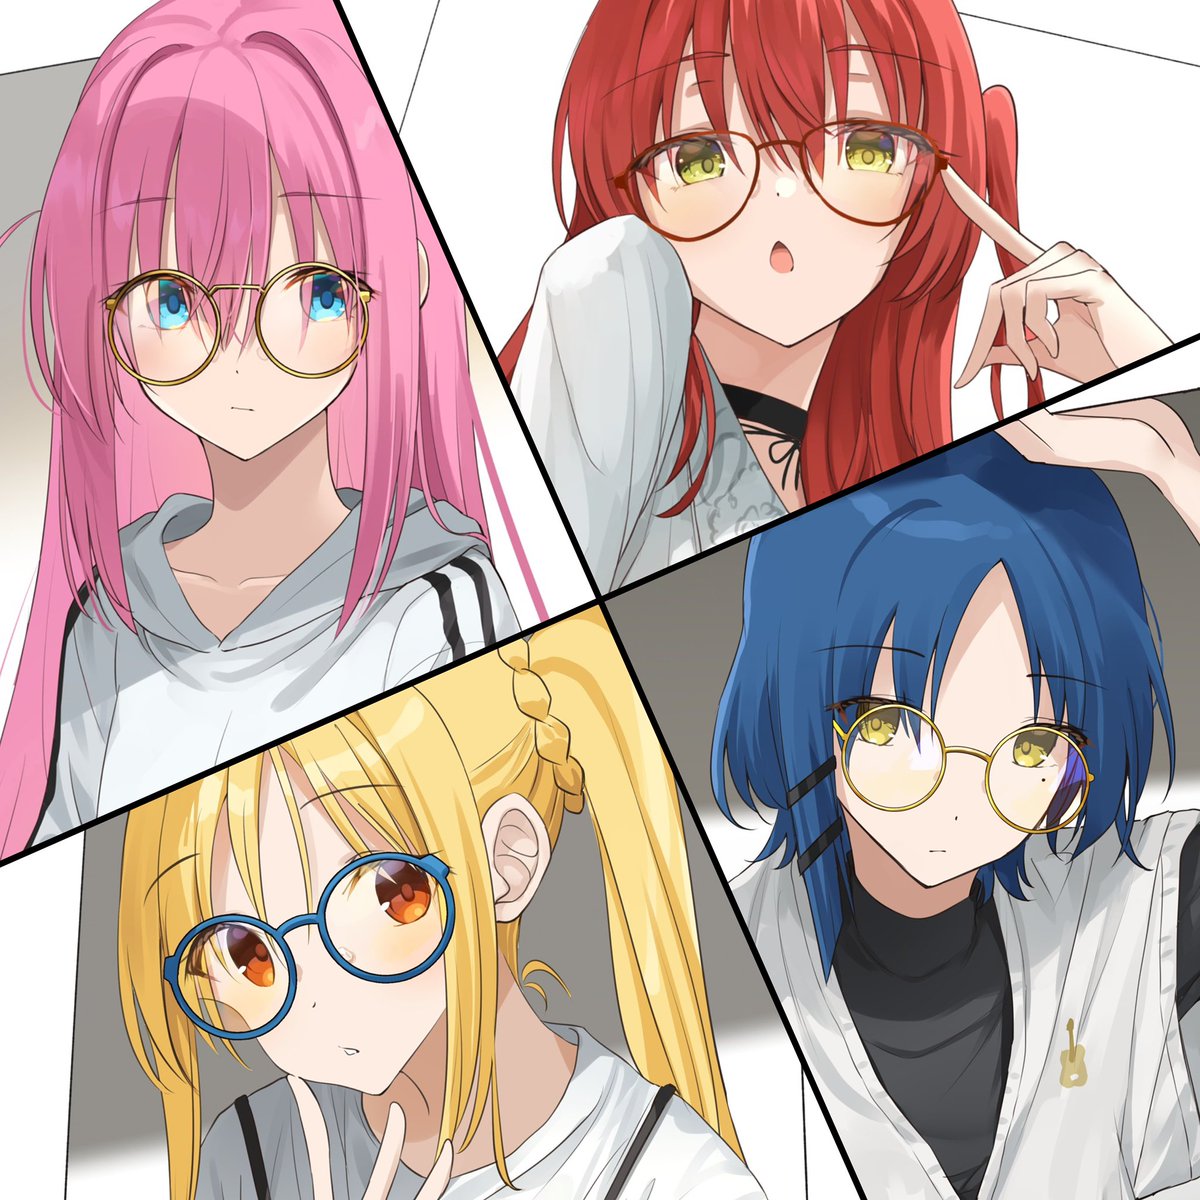 gotou hitori ,ijichi nijika multiple girls 4girls glasses pink hair blonde hair blue hair yellow eyes  illustration images